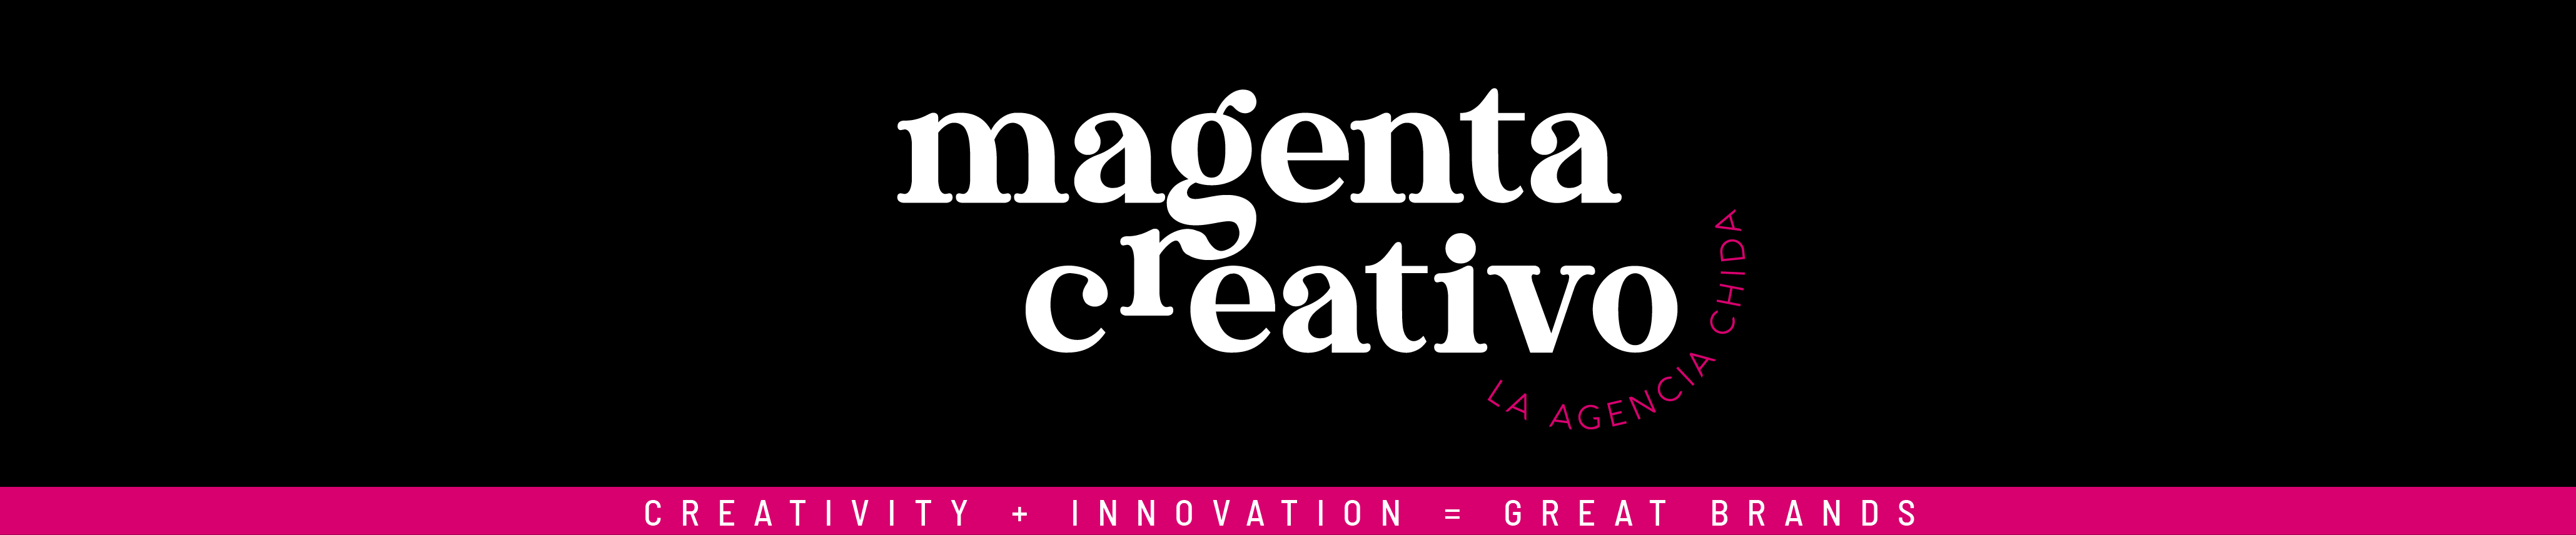 Magenta Creativo MX's profile banner